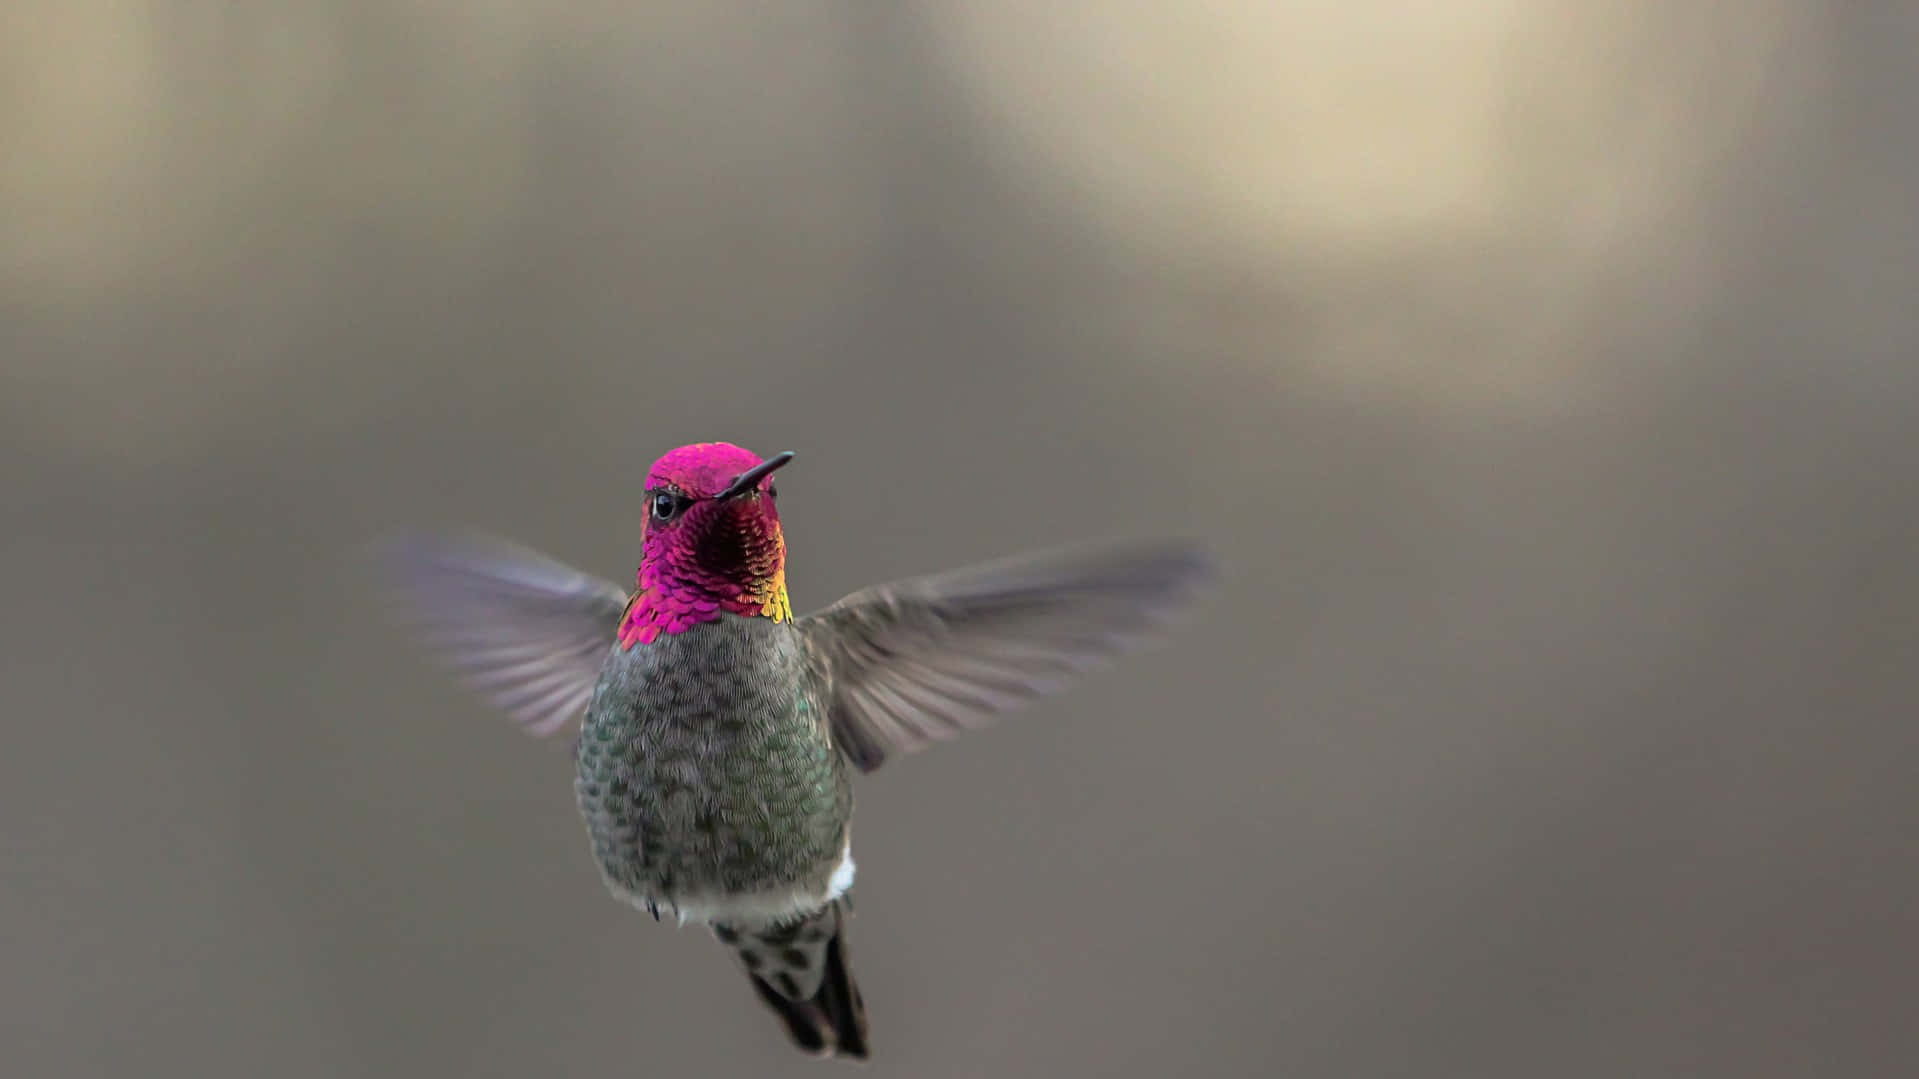 Billedeaf En Skinnende Kolibri Med En Farverig Fjerdragt, Der Sidder På En Blomstrende Baggrund.